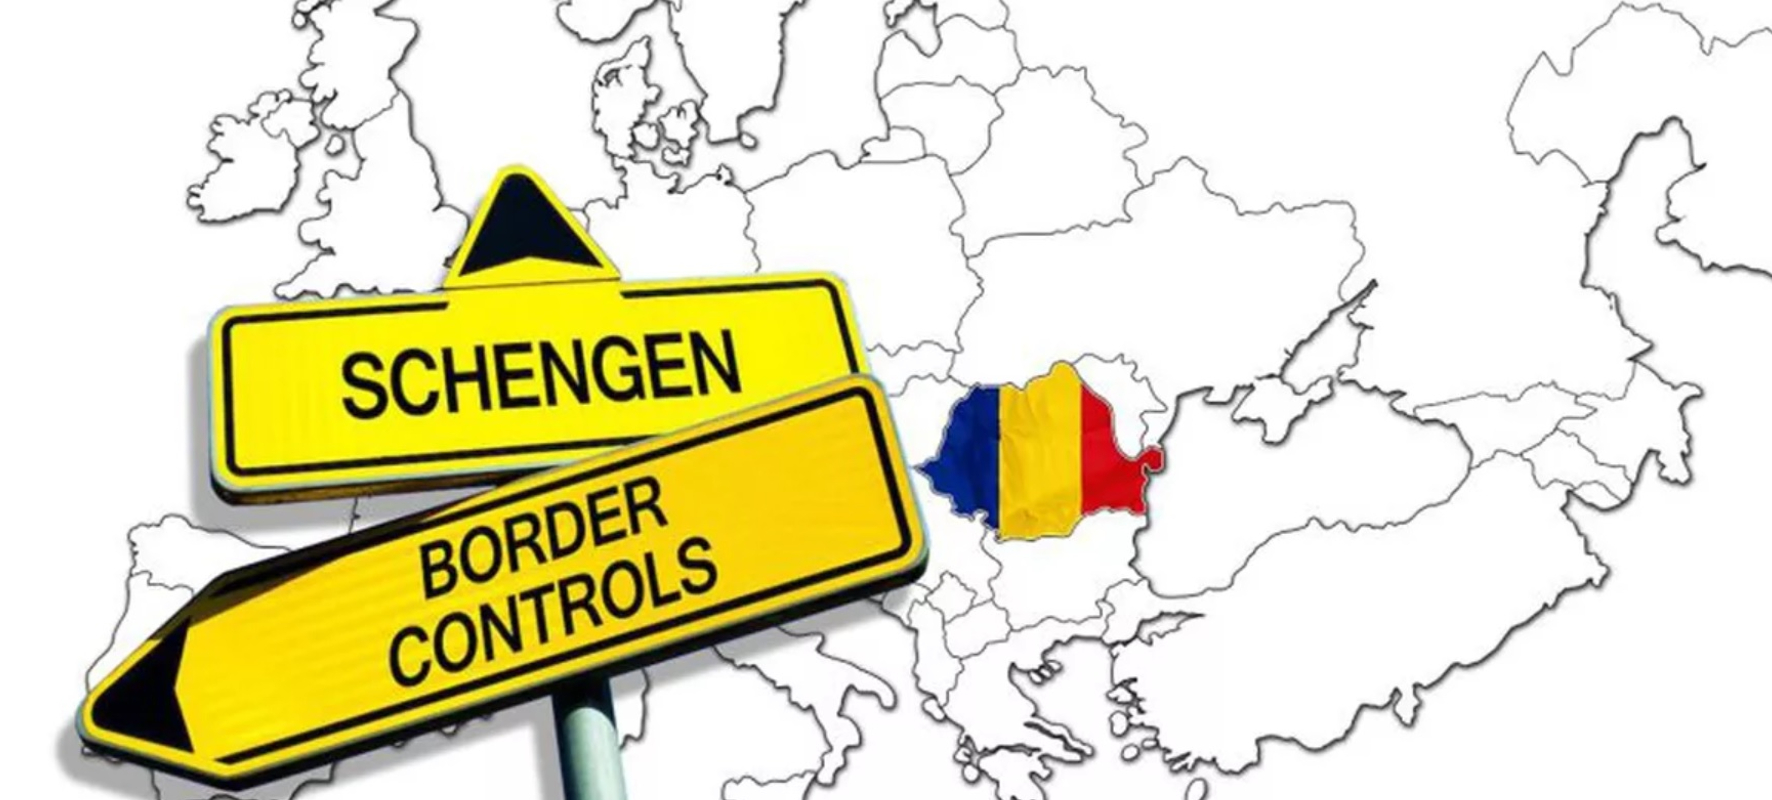 Veste uriașă privind aderarea României la Spațiul Schengen! Informația a venit direct din Olanda